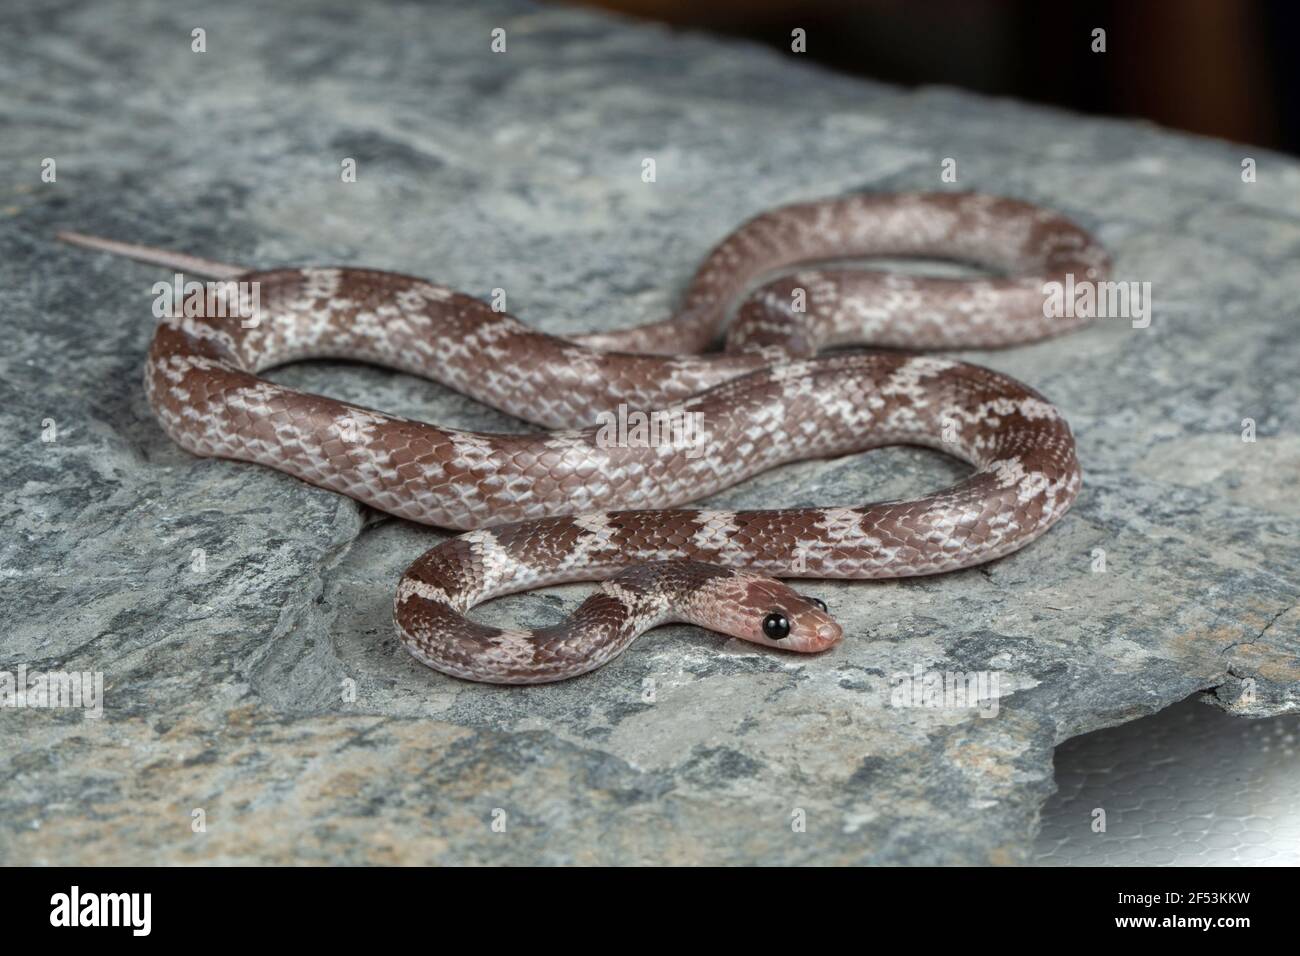 La serpiente de lobo deccan, Lycodon deccanensis es una especie de serpiente de culebra nocturna no venomosa endémica del sur de la India Foto de stock